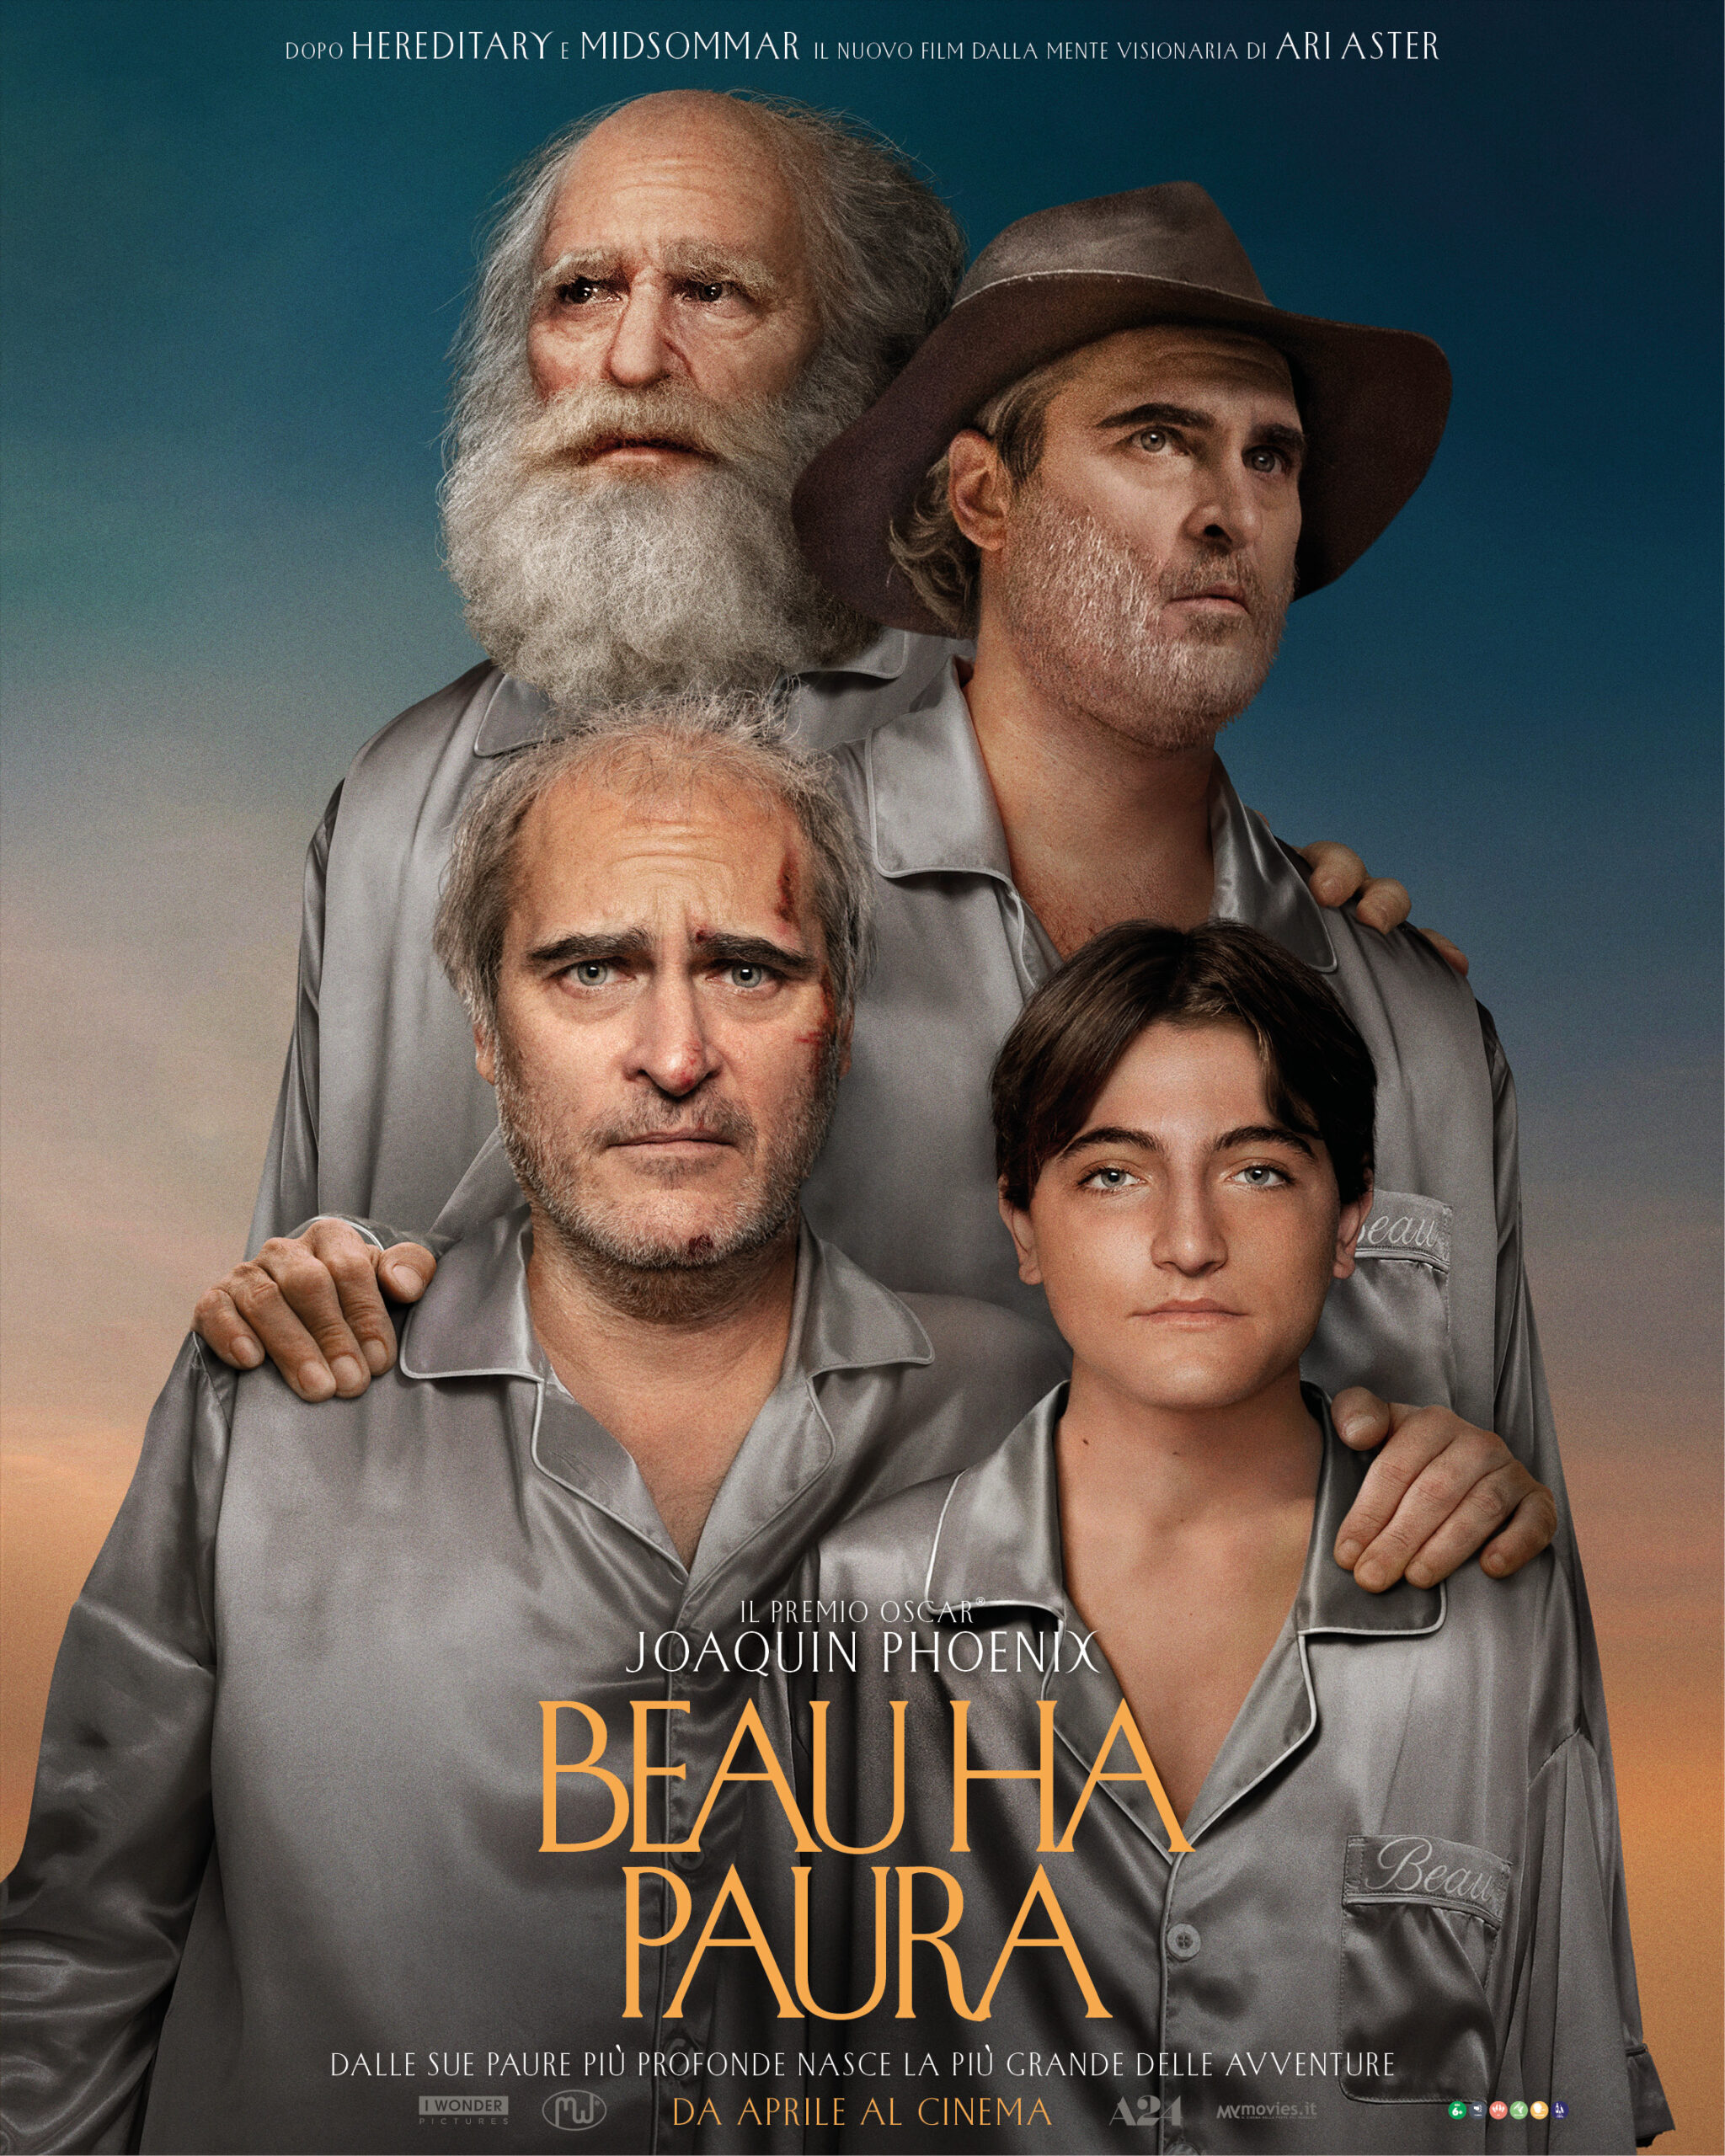 Beau ha paura, il poster italiano del film